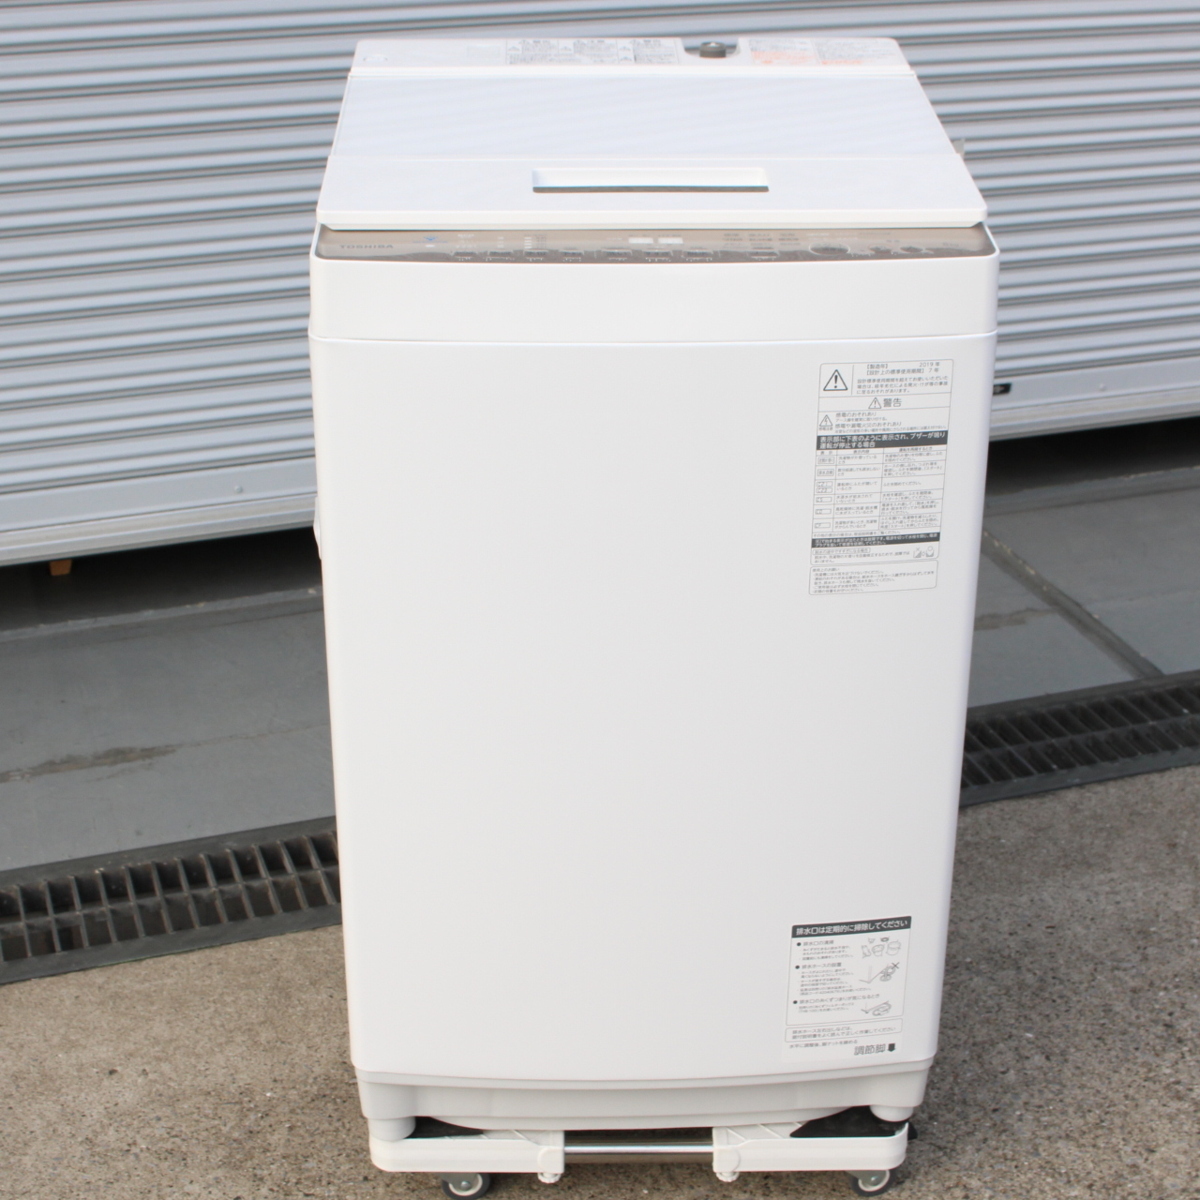 東芝 全自動洗濯機 洗濯機 AW-BK8D7(W) 2019年製 グランホワイト 8kg